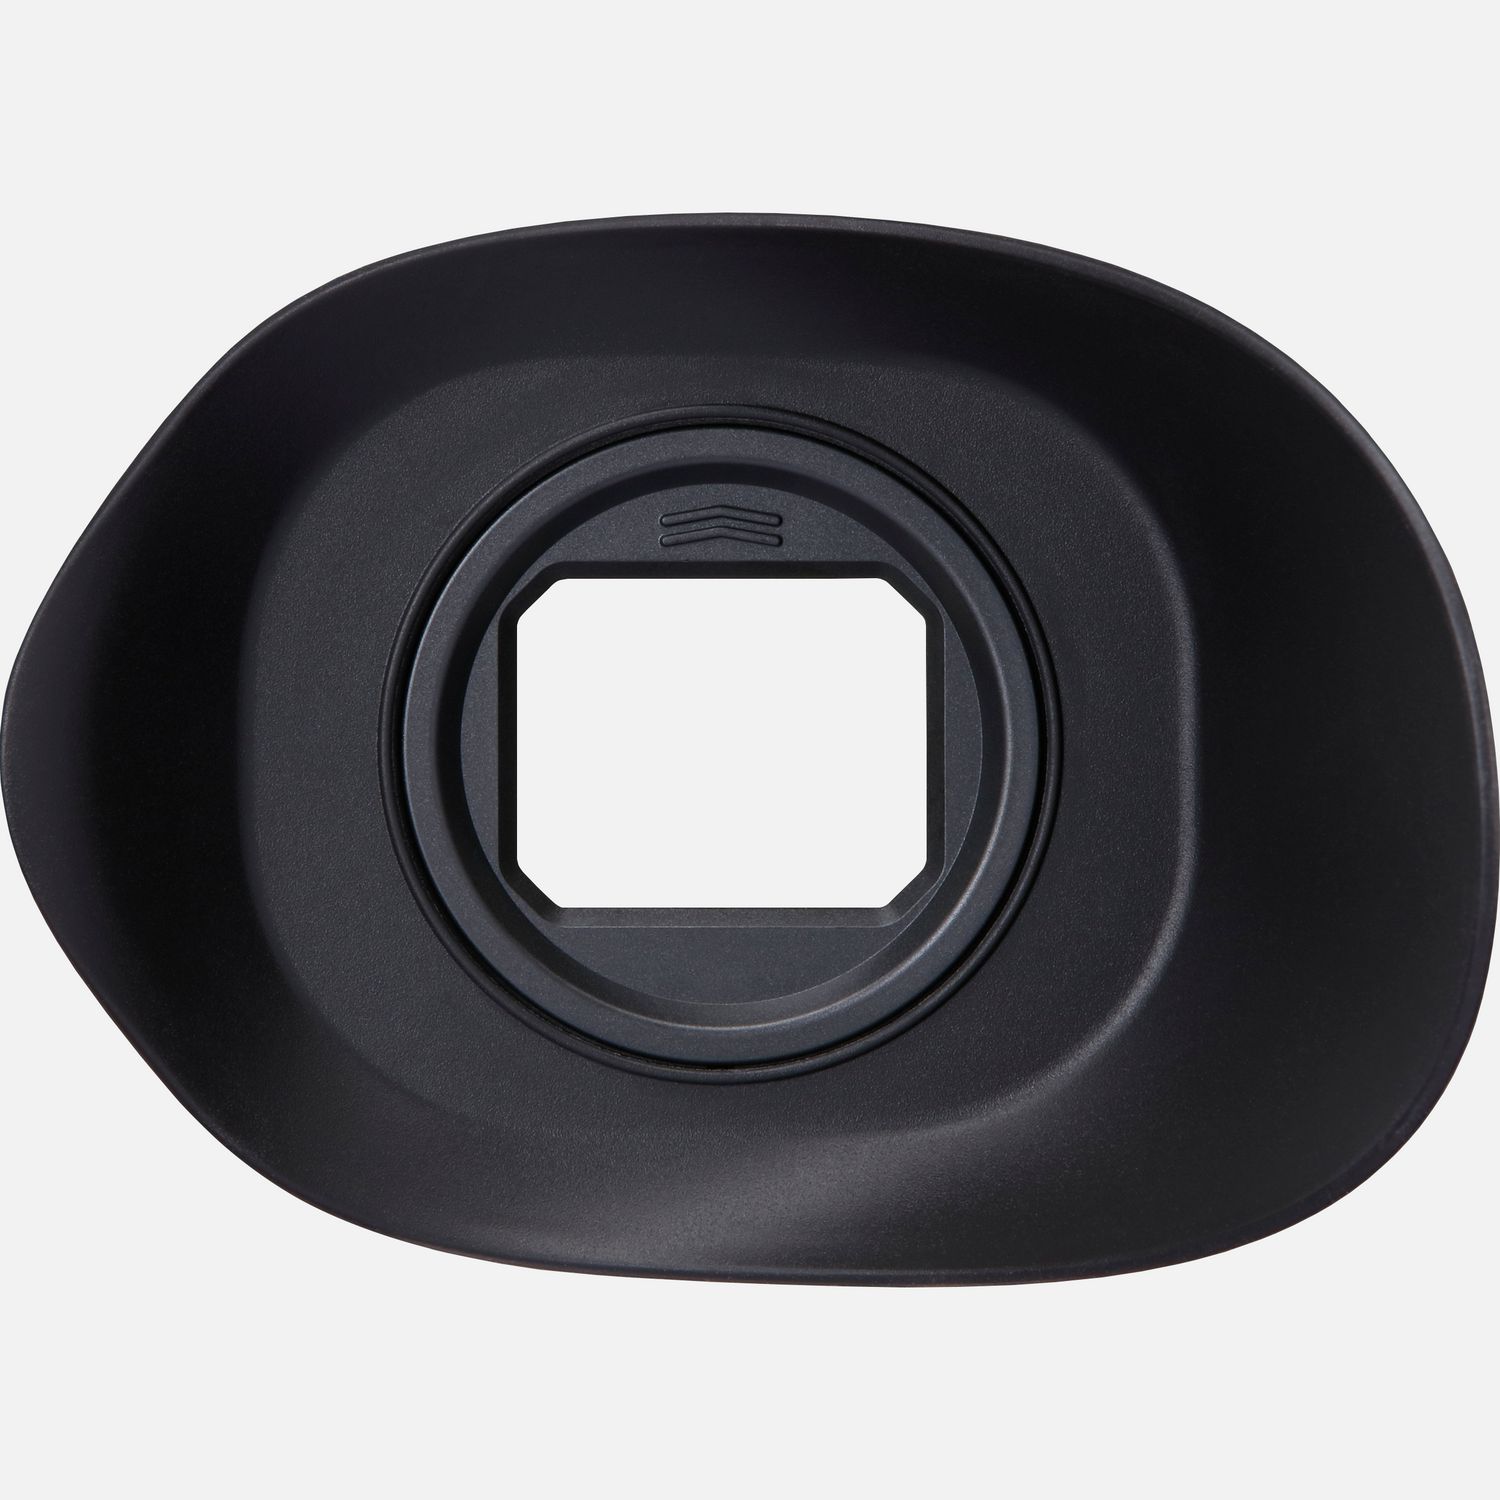 Schirmt den Sucher vor dem Eindringen von hellem Umgebungslicht ab, um eine klare Sicht zu gewhrleisten. Durch das groe asymmetrische Design ist sie ideal fr die Verwendung mit dem Eye Control AF der EOS R3 Kamera, da damit die Infrarot-Augensensoren der Kamera geschtzt werden. Der groe Durchmesser vereinfacht Brillentrgern die Verwendung der Kamera dabei kann sie am rechten oder linken Auge gehalten werden, weil die Muschel in 90-Stufen um 360 gedreht werden kann.  Vorteile      Schtzt die Infrarot-Augensensoren in der Kamera vor Streulicht          Das groe asymmetrische Design ist ideal fr den Einsatz mit Eye Control AF und fr Brillentrger          360-Drehmechanismus, der alle 90 einrastet, so dass der Brillentrger die Kamera sowohl am linken als auch am rechten Auge halten kann          Gewicht: 25 Gramm          Lieferumfang       ER-hE Augenmuschel            Kompatibilitt       EOS R3